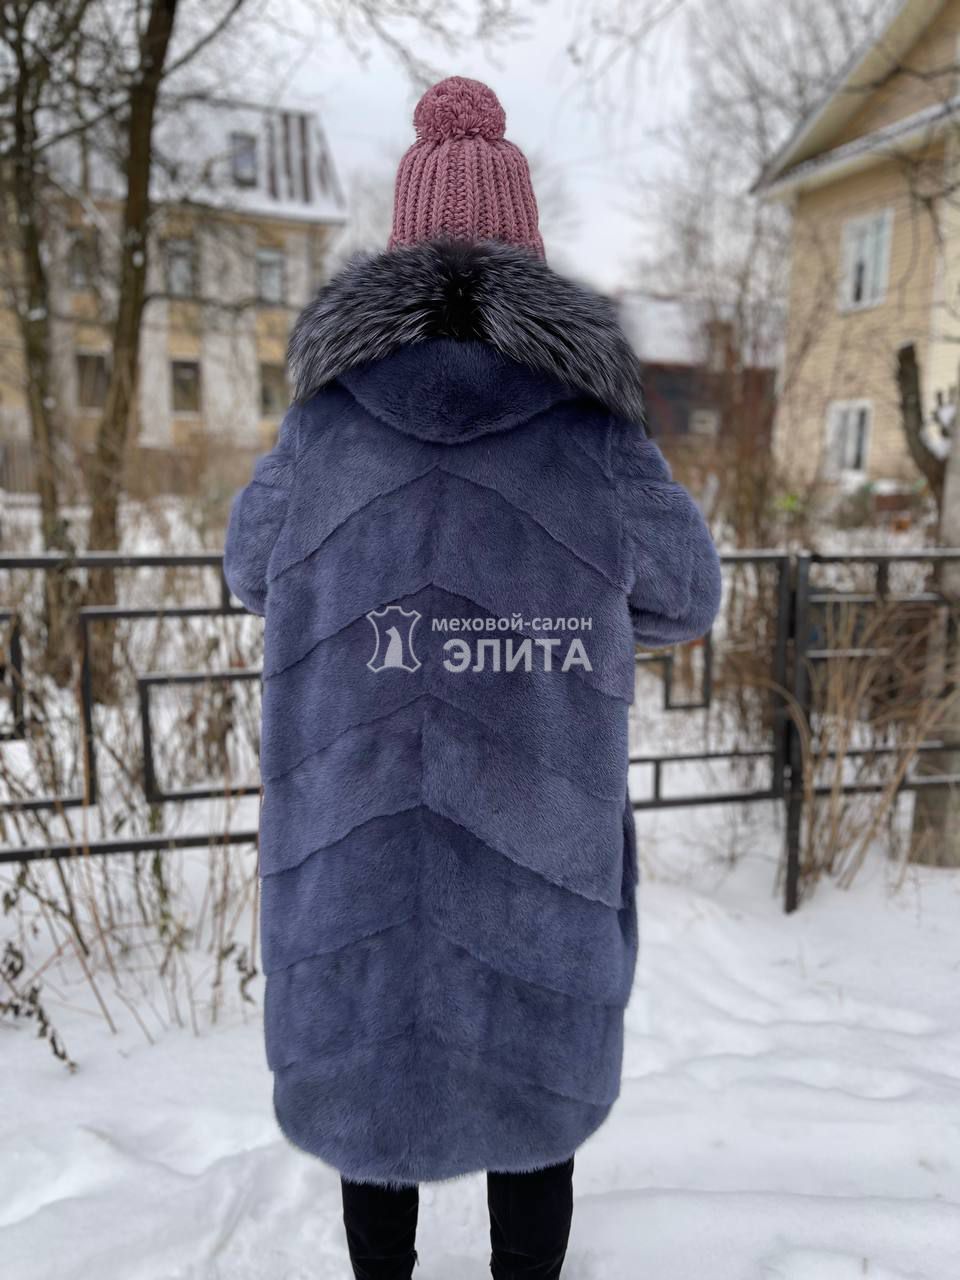 Пальто из норки S-18237 р-р 48-52, цена 161550 рублей в интернет-магазине кожи и меха ЭЛИТА. Вид 2